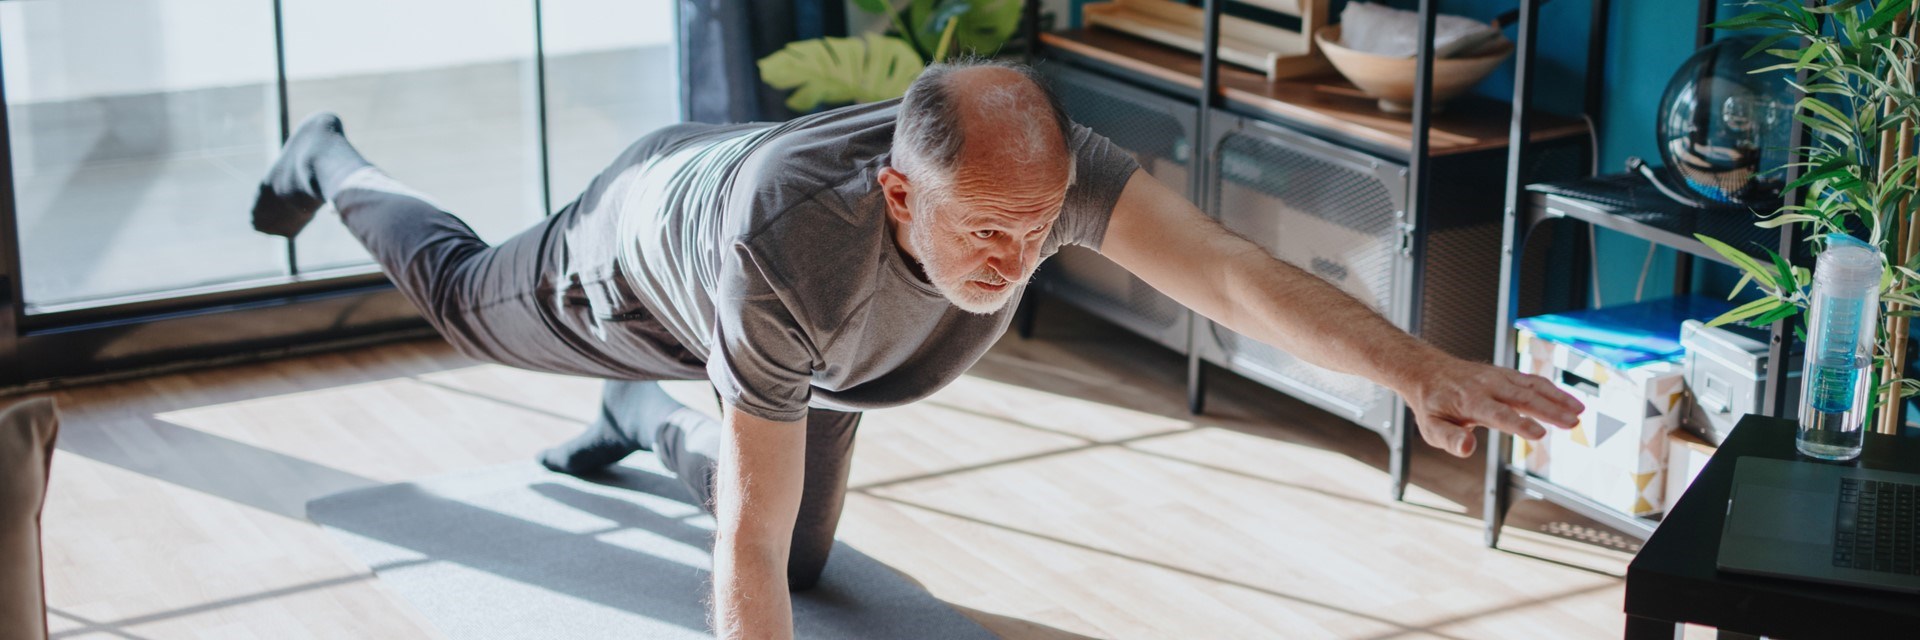 Older man doing yoga in living room